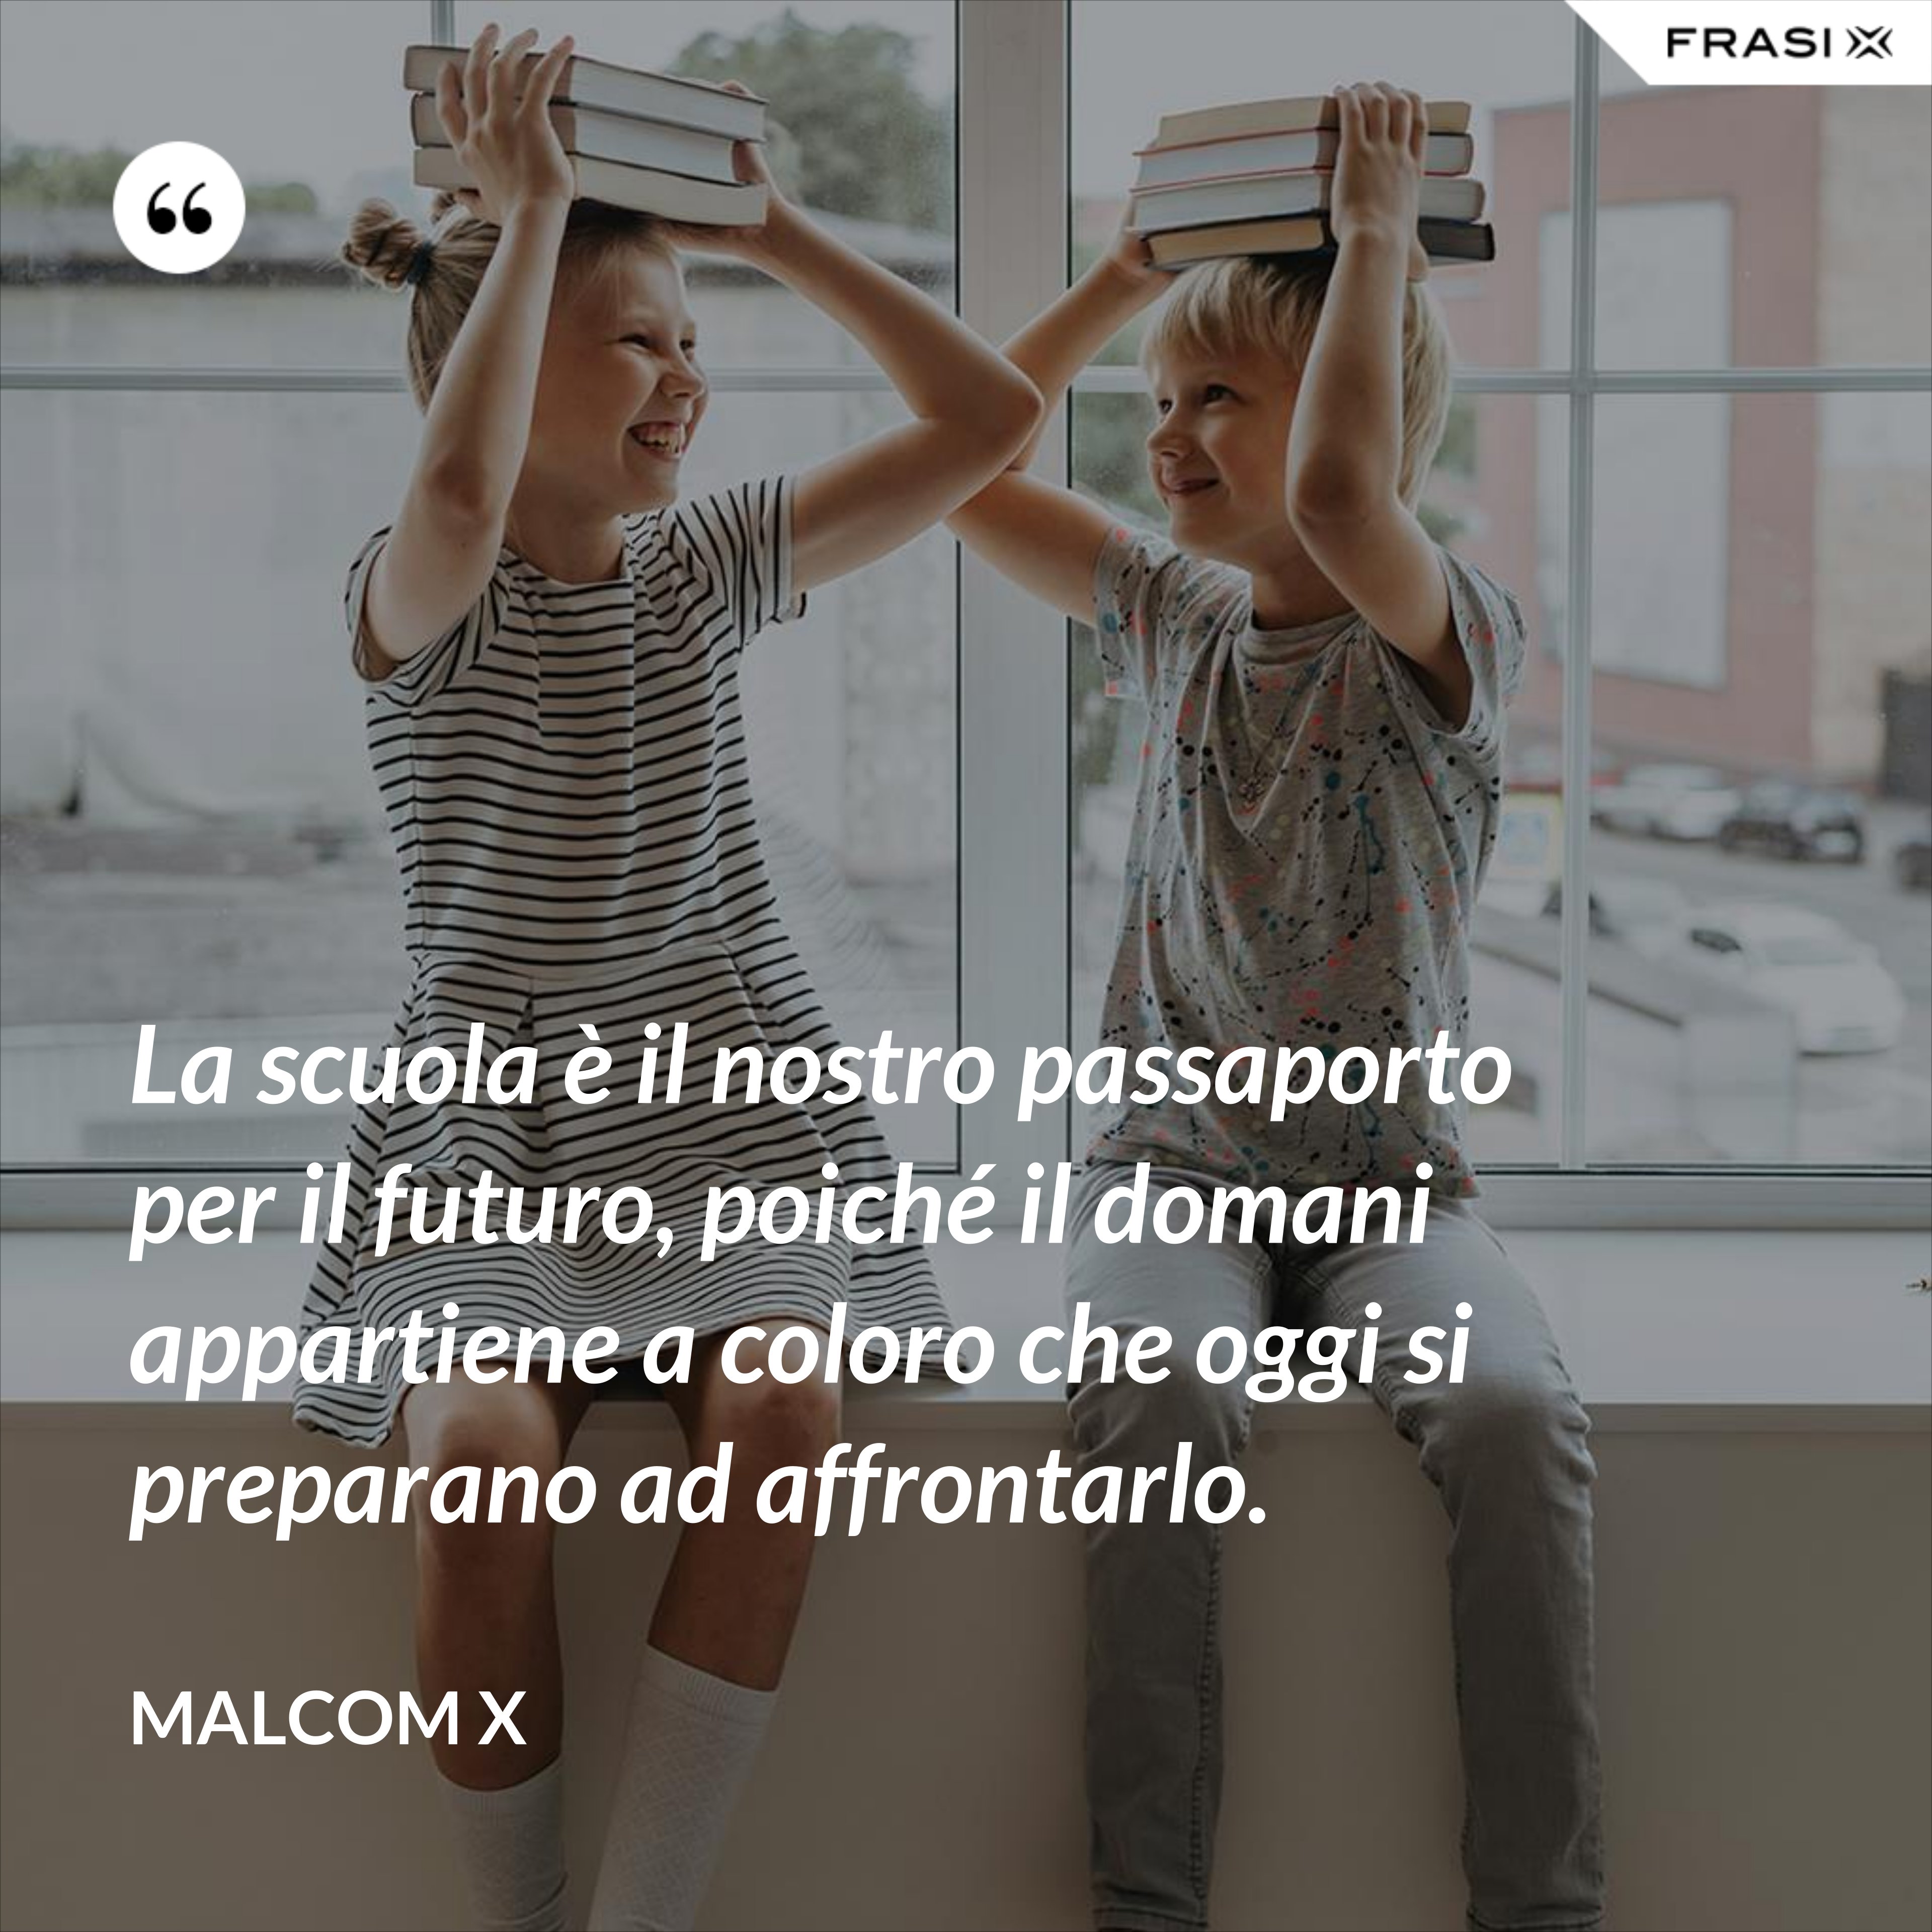 La scuola è il nostro passaporto per il futuro, poiché il domani appartiene a coloro che oggi si preparano ad affrontarlo. - Malcom X